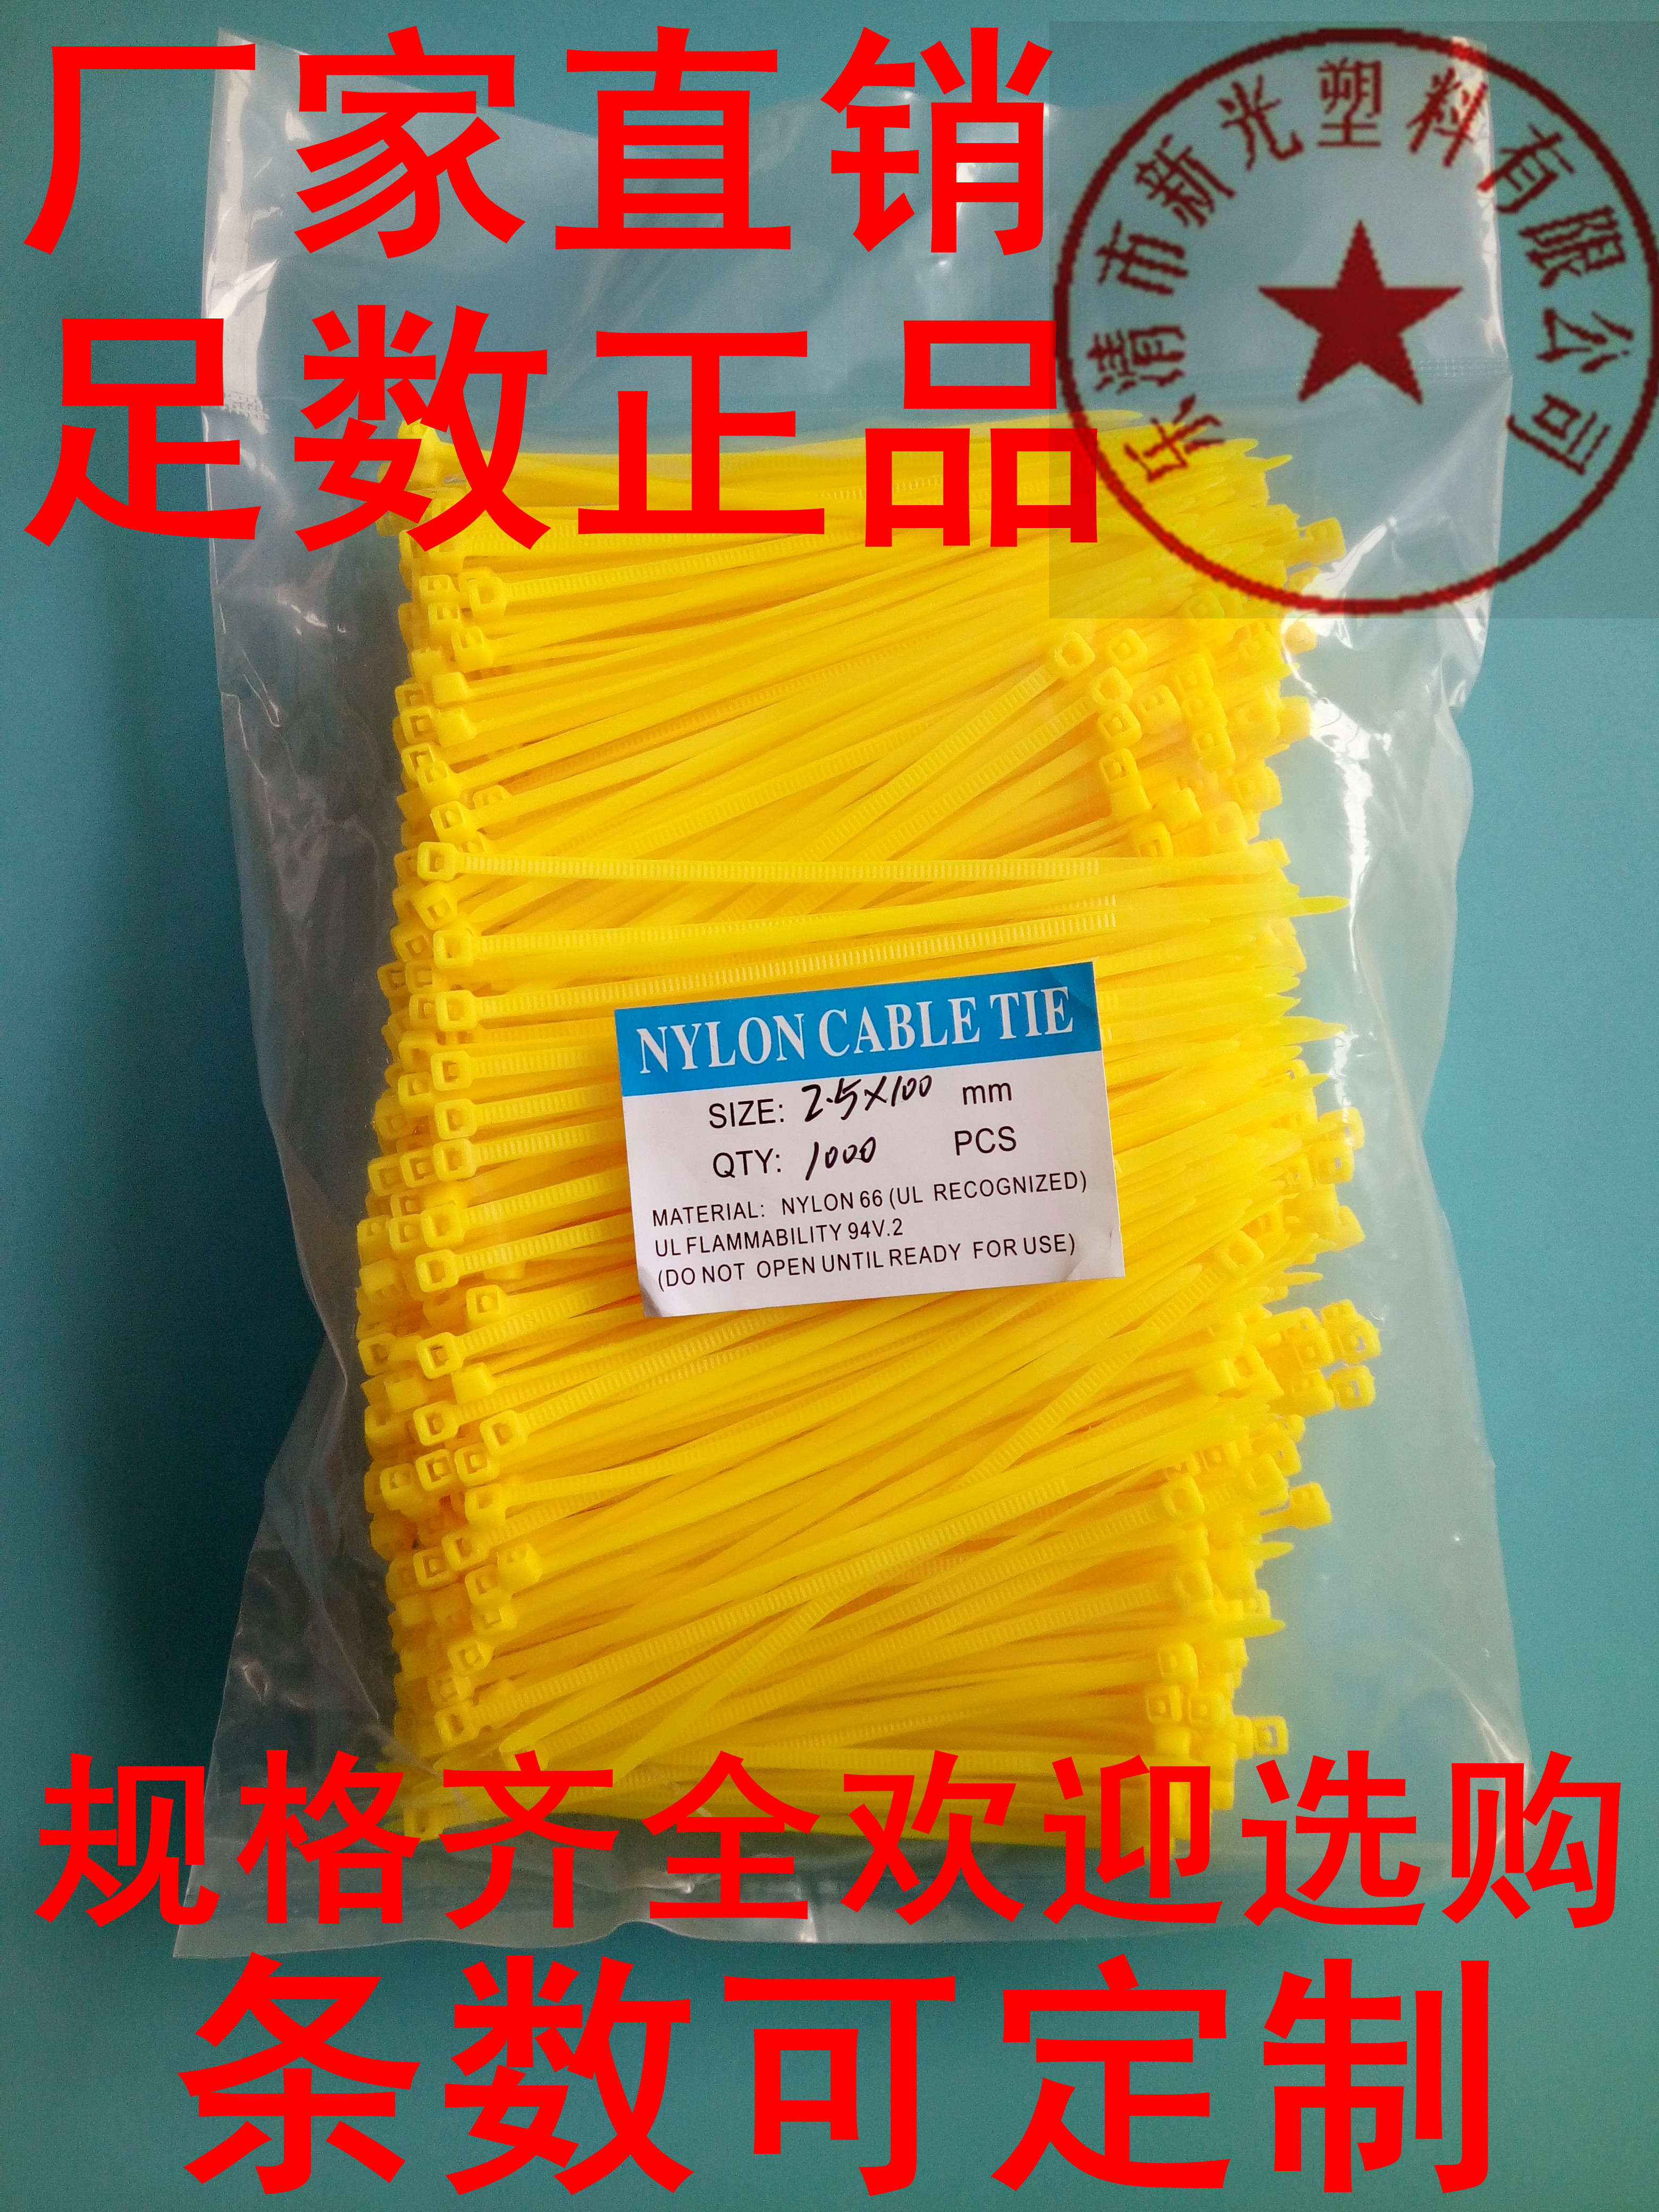 厂家直销新光塑料尼龙扎带2.5X100mm/包1000条/黄色线束带